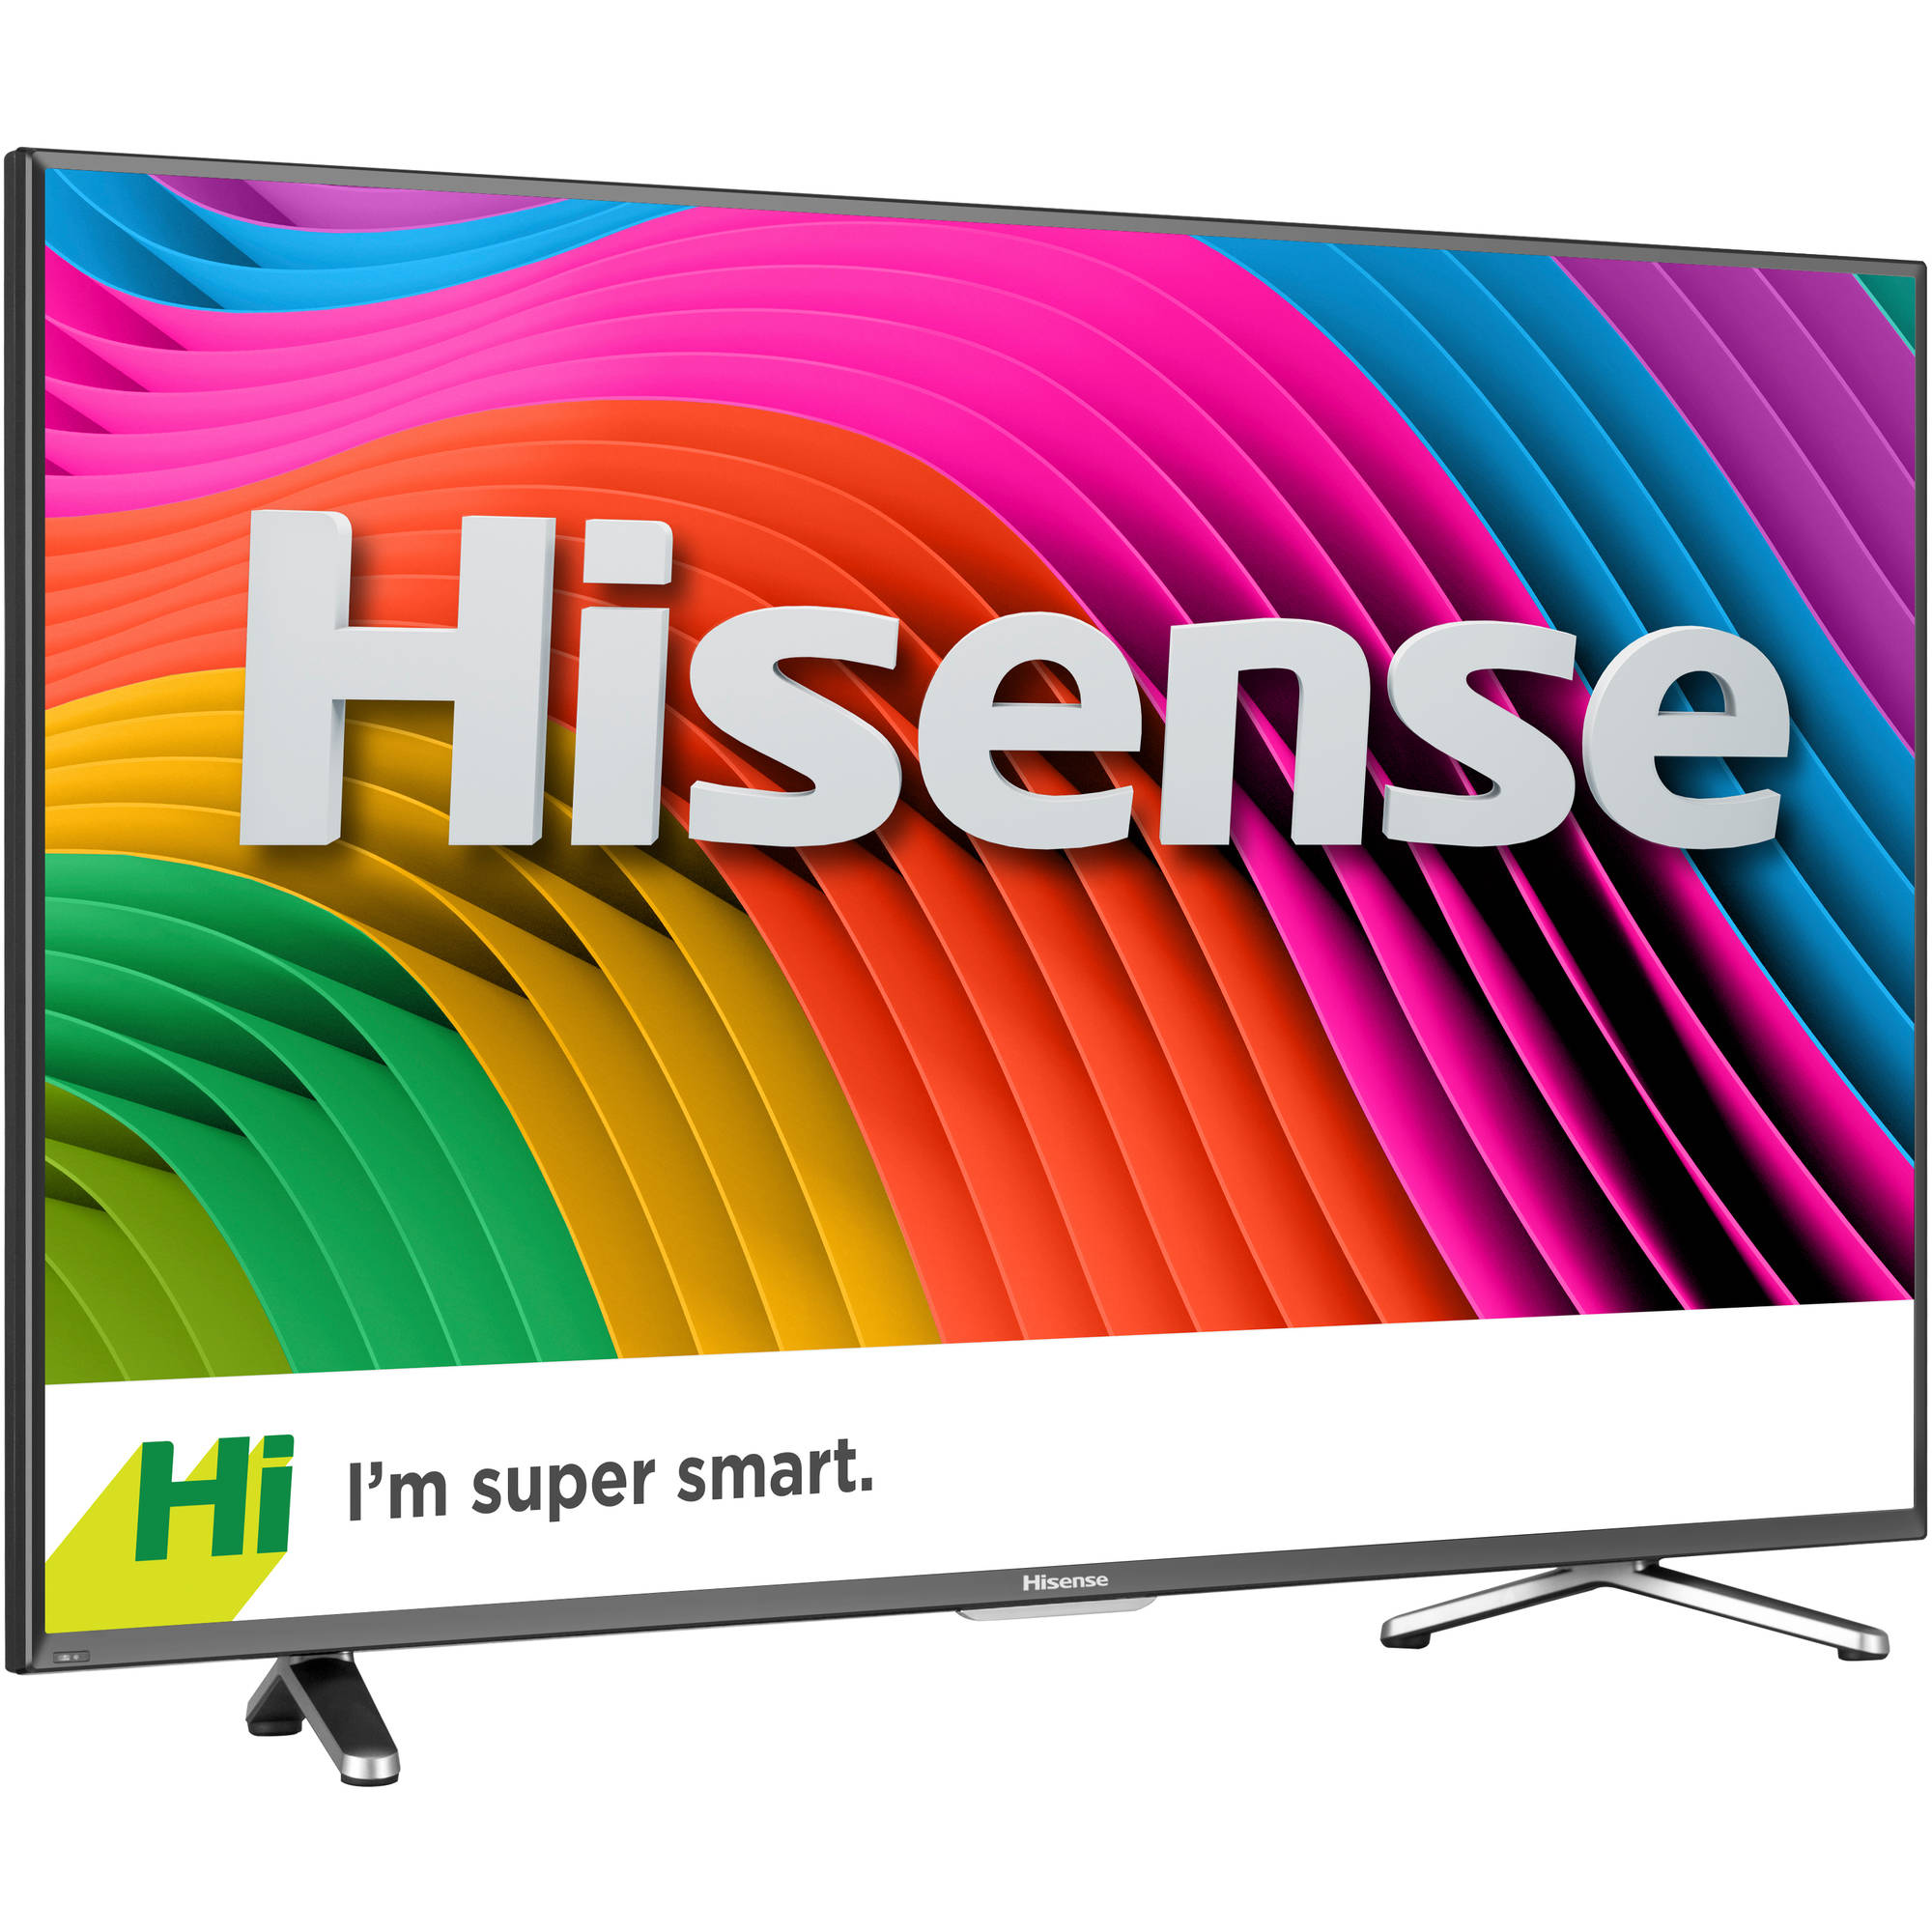 Hisense 50" Class 4K UHDTV (2160p) Smart LED-LCD TV (50H7C) - image 2 of 8